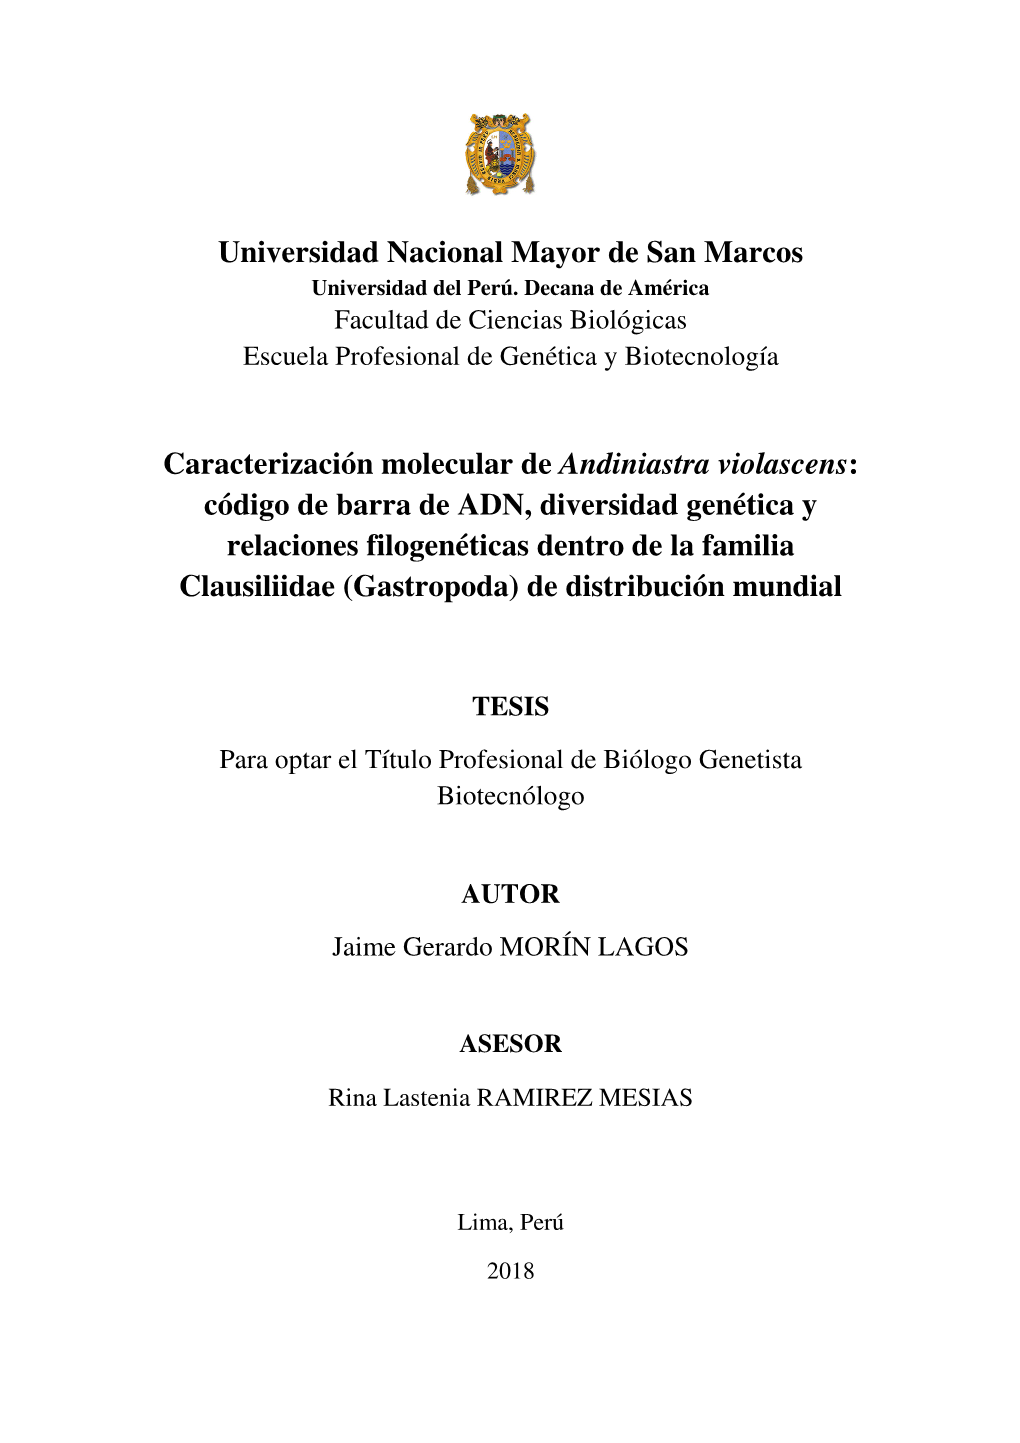 Universidad Nacional Mayor De San Marcos Caracterización Molecular De Andiniastra Violascens: Código De Barra De ADN, Diversid